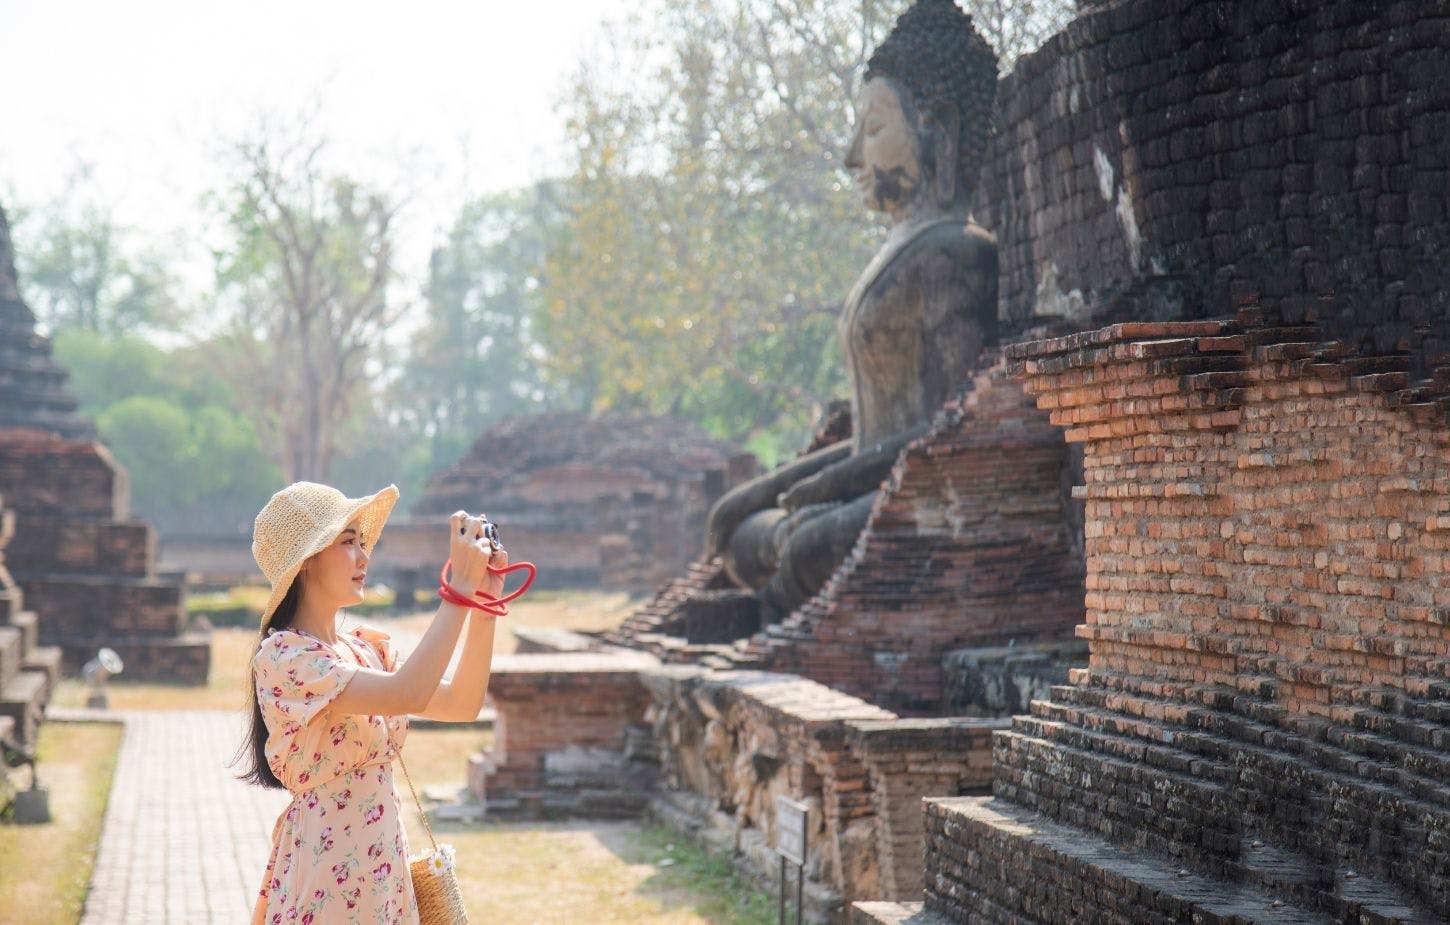 Excursão de dia inteiro pela cidade histórica de Ayutthaya